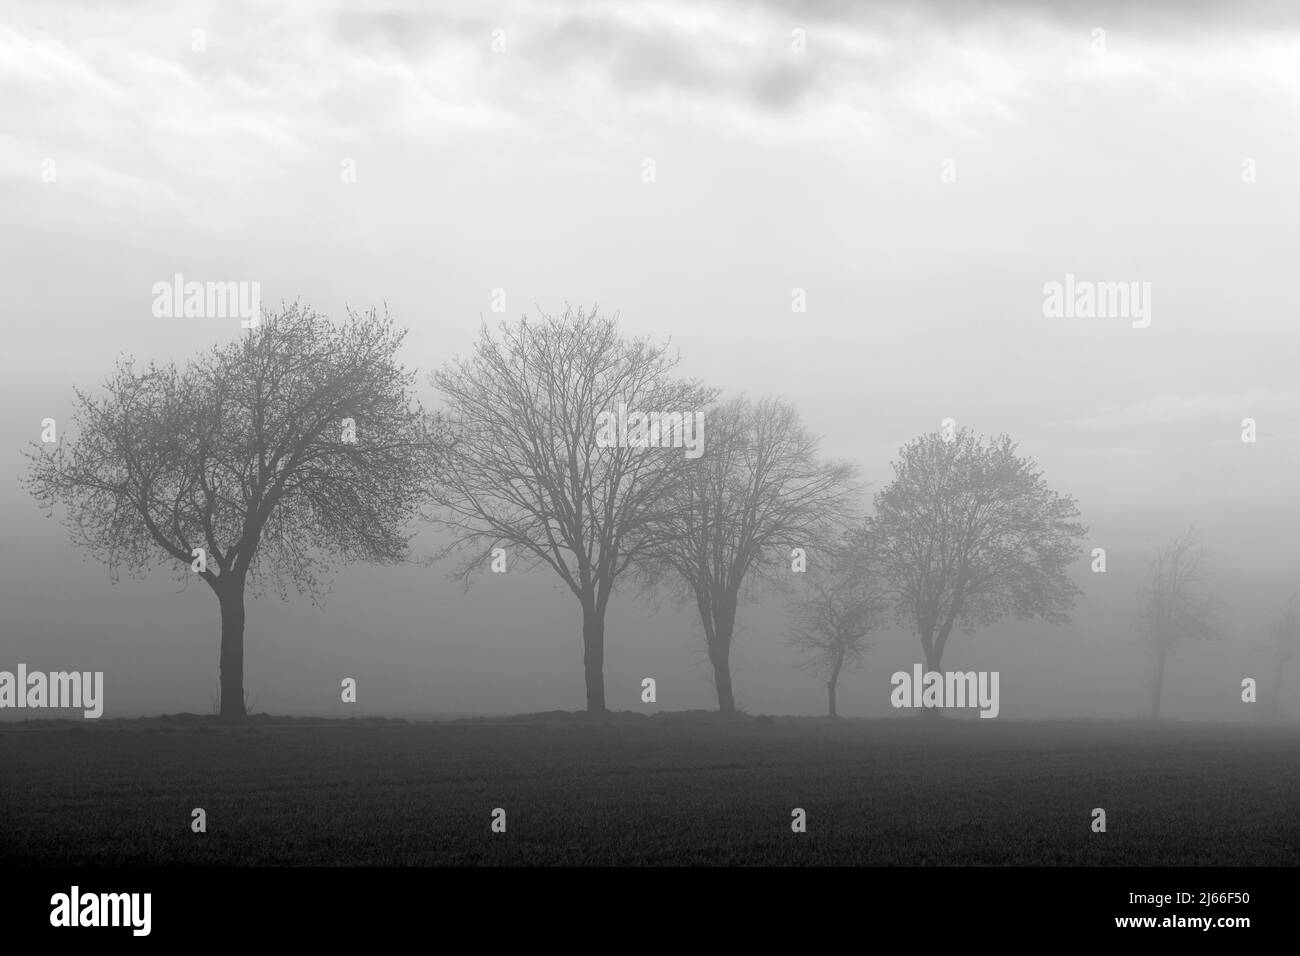 Laubbaueume, Baumreihe im Nebel, schwarzweiss, Nordrhein-Westfalen, Allemagne Banque D'Images